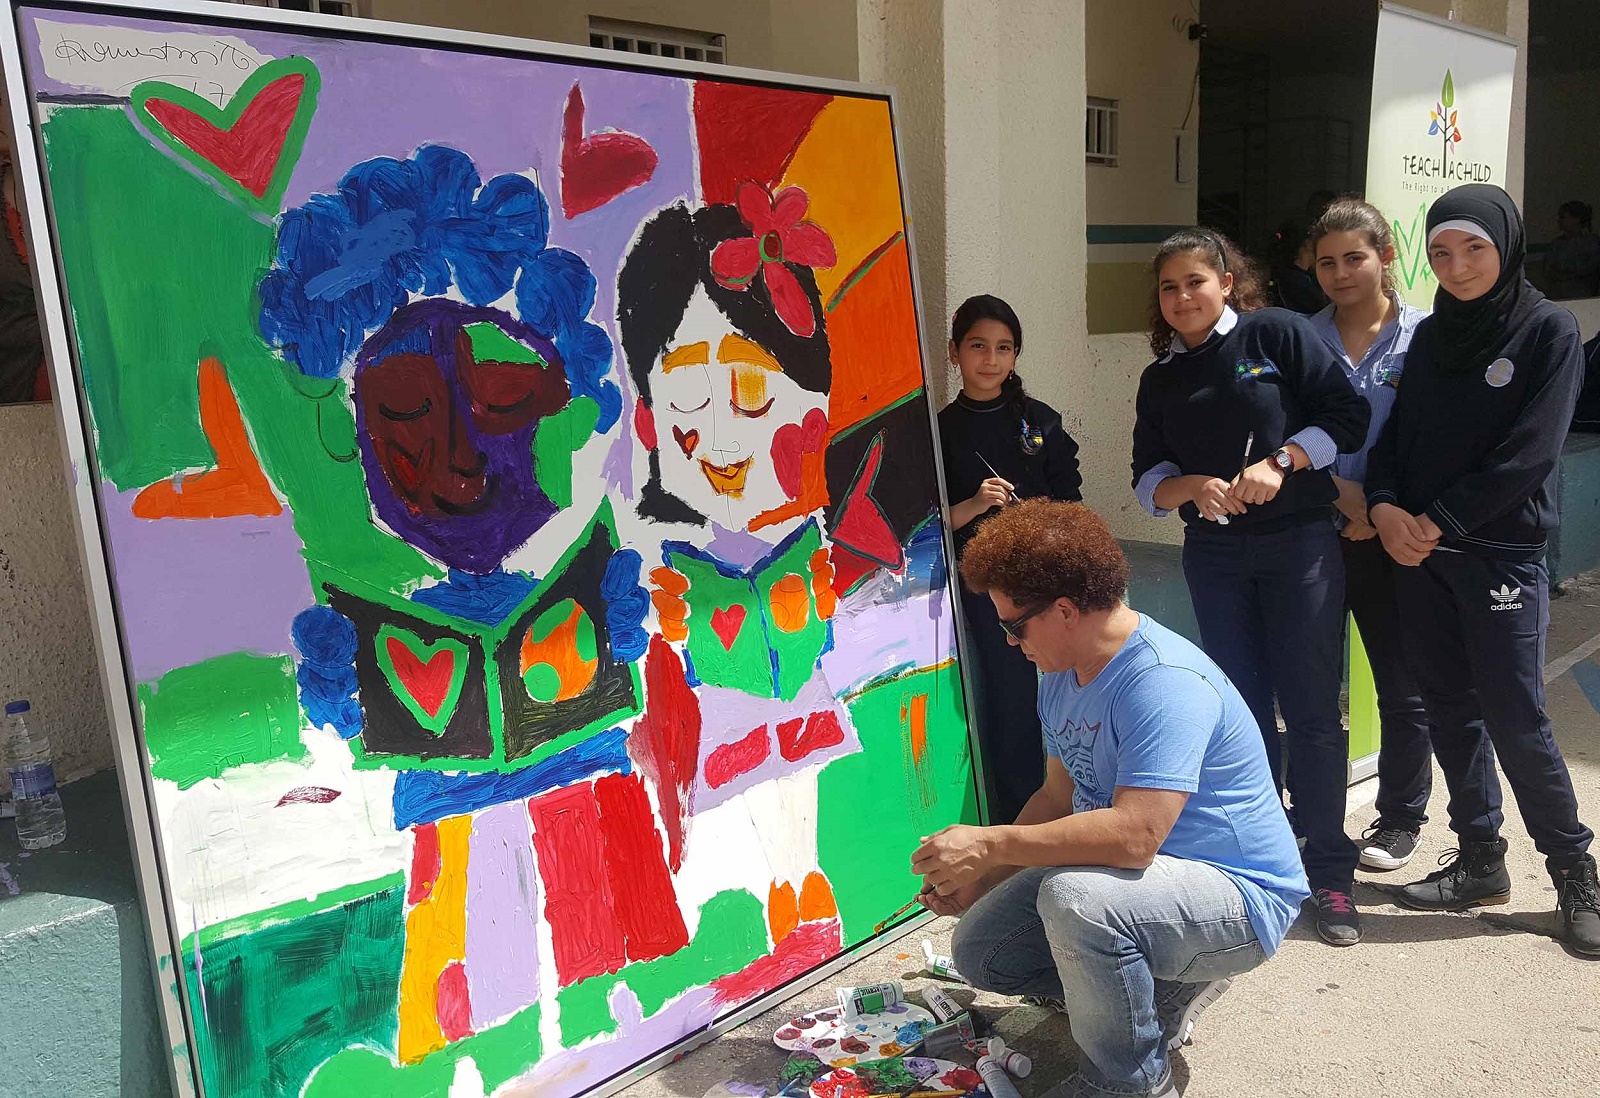 الفنان روميرو بريتو يرسم مع التلامذة